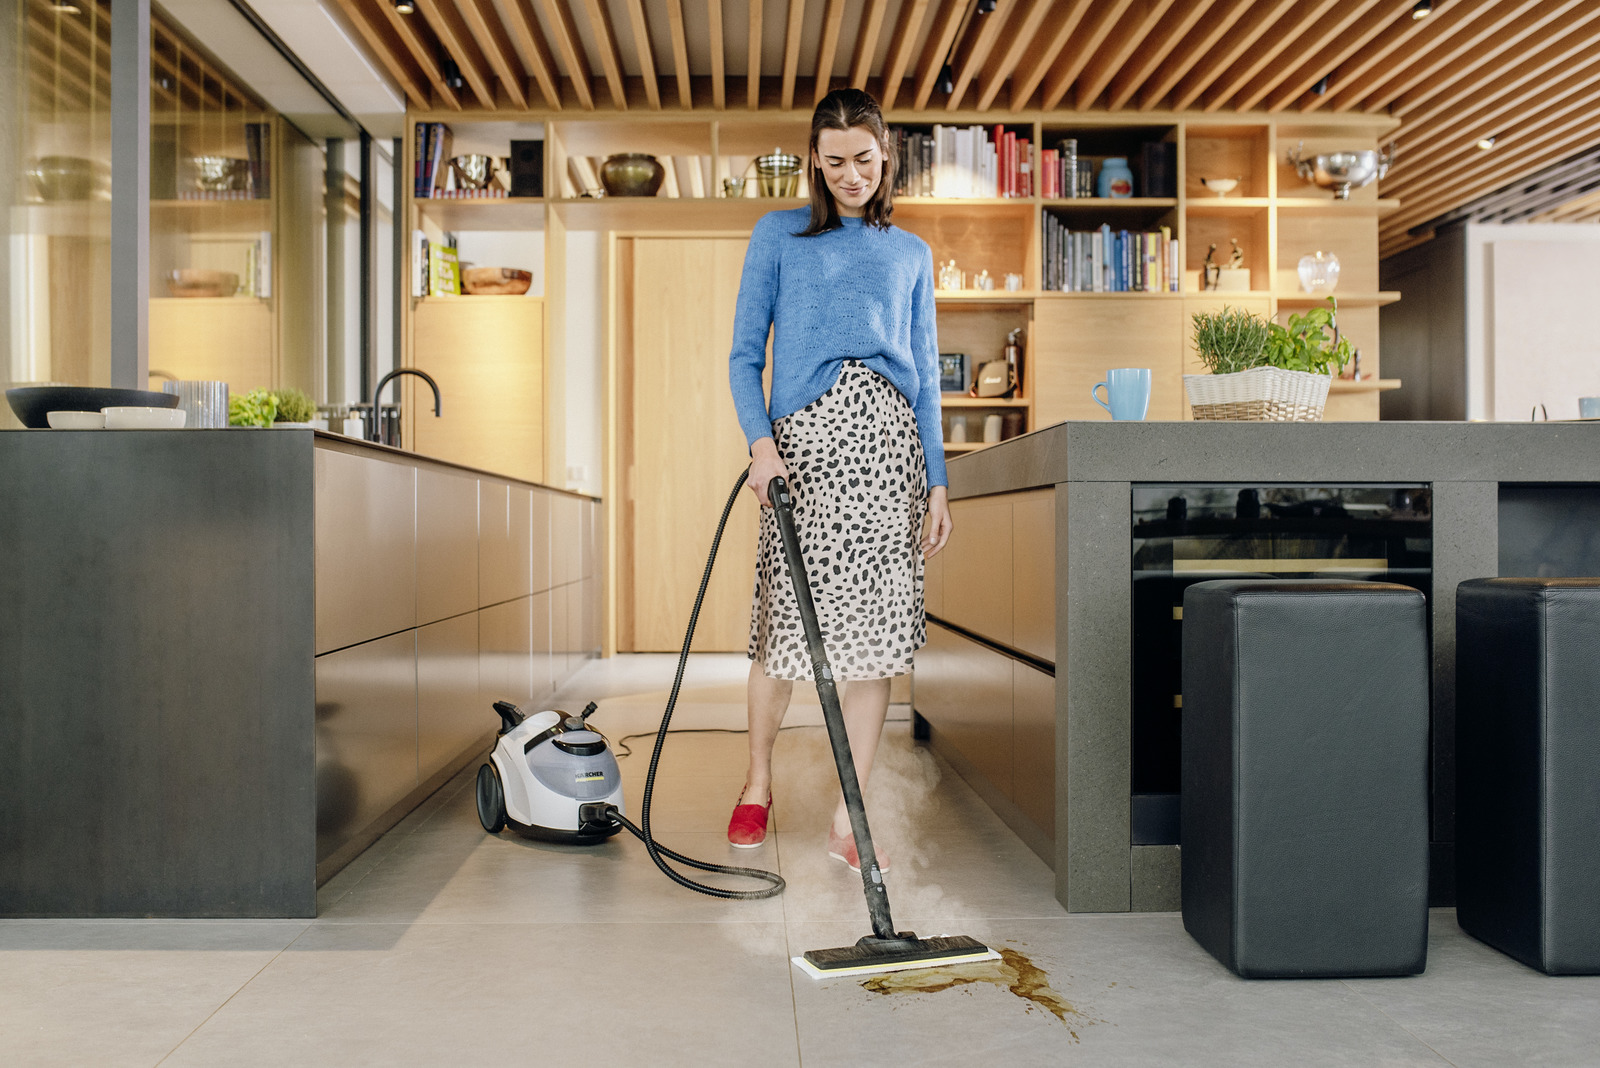 Kärcher Floor Cleaner 3 nettoyeur de sol sans fil